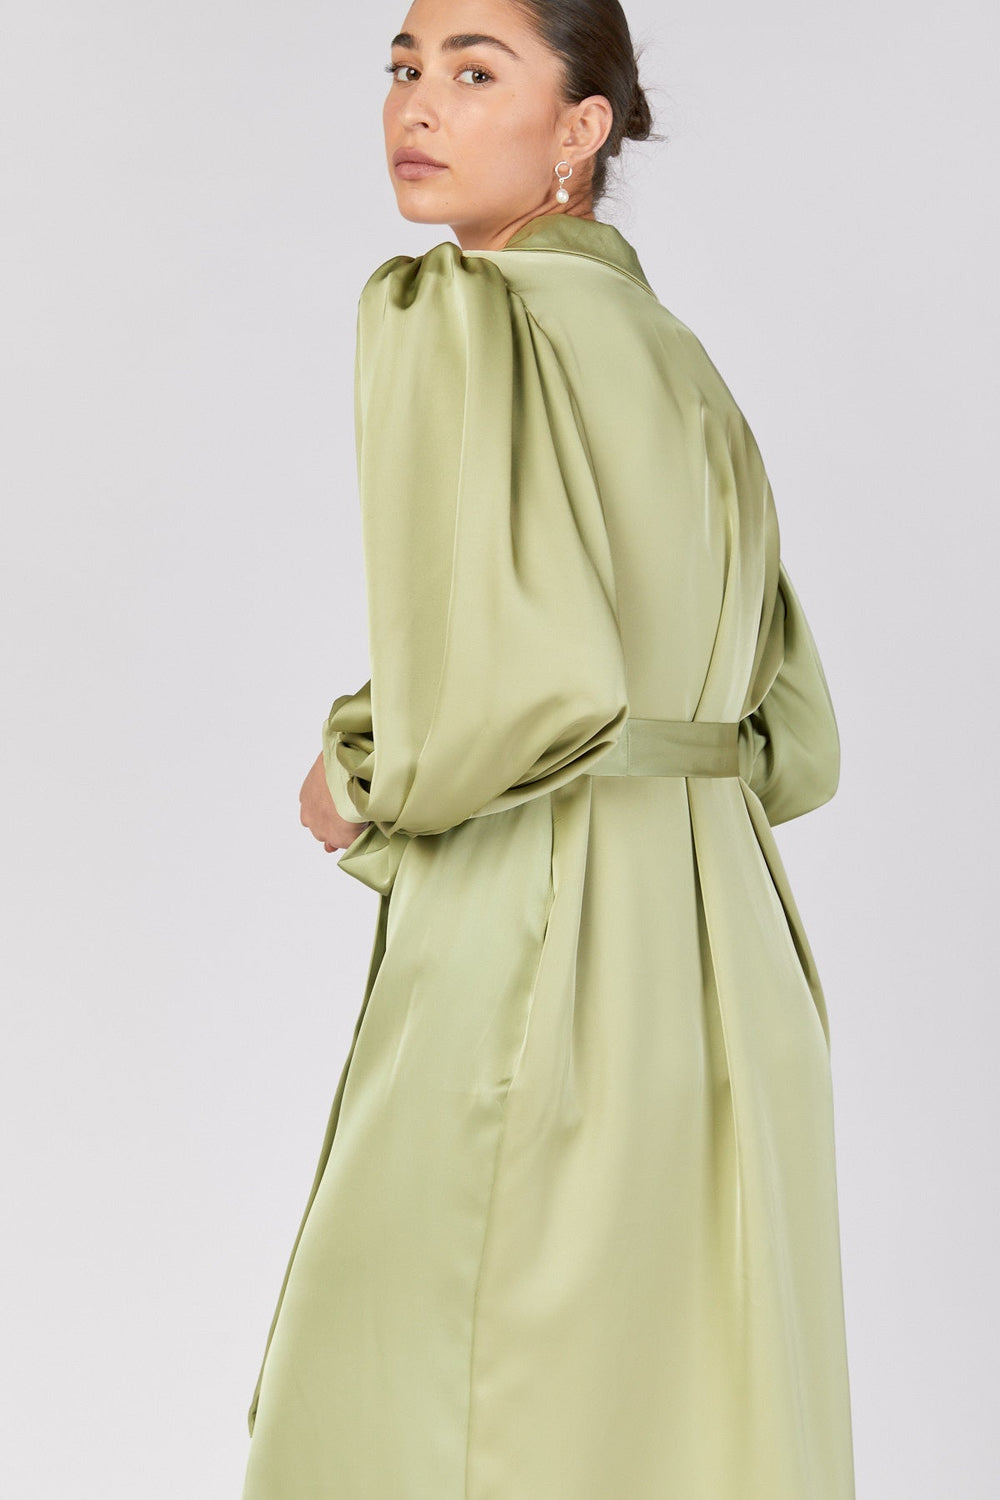 שמלת מרייט בצבע ירוק - Dana Sidi